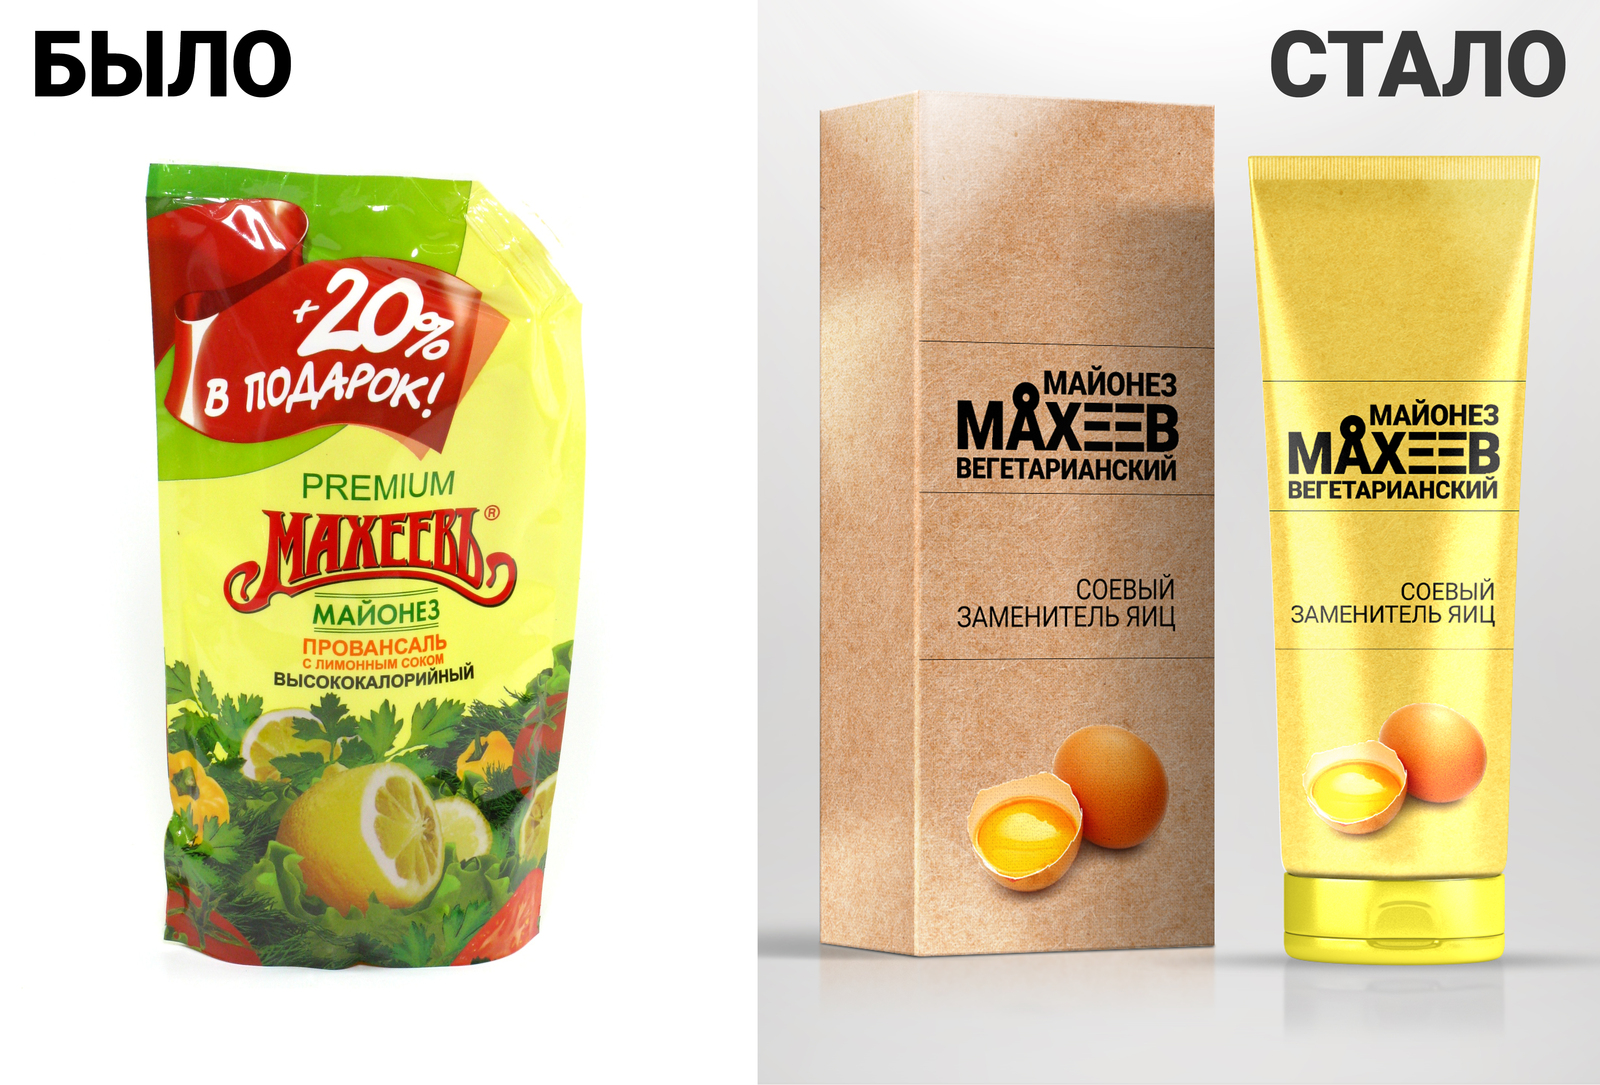 Поменялась упаковка. Упаковка майонеза материал. Вегетарианский майонез. Заменитель яиц.